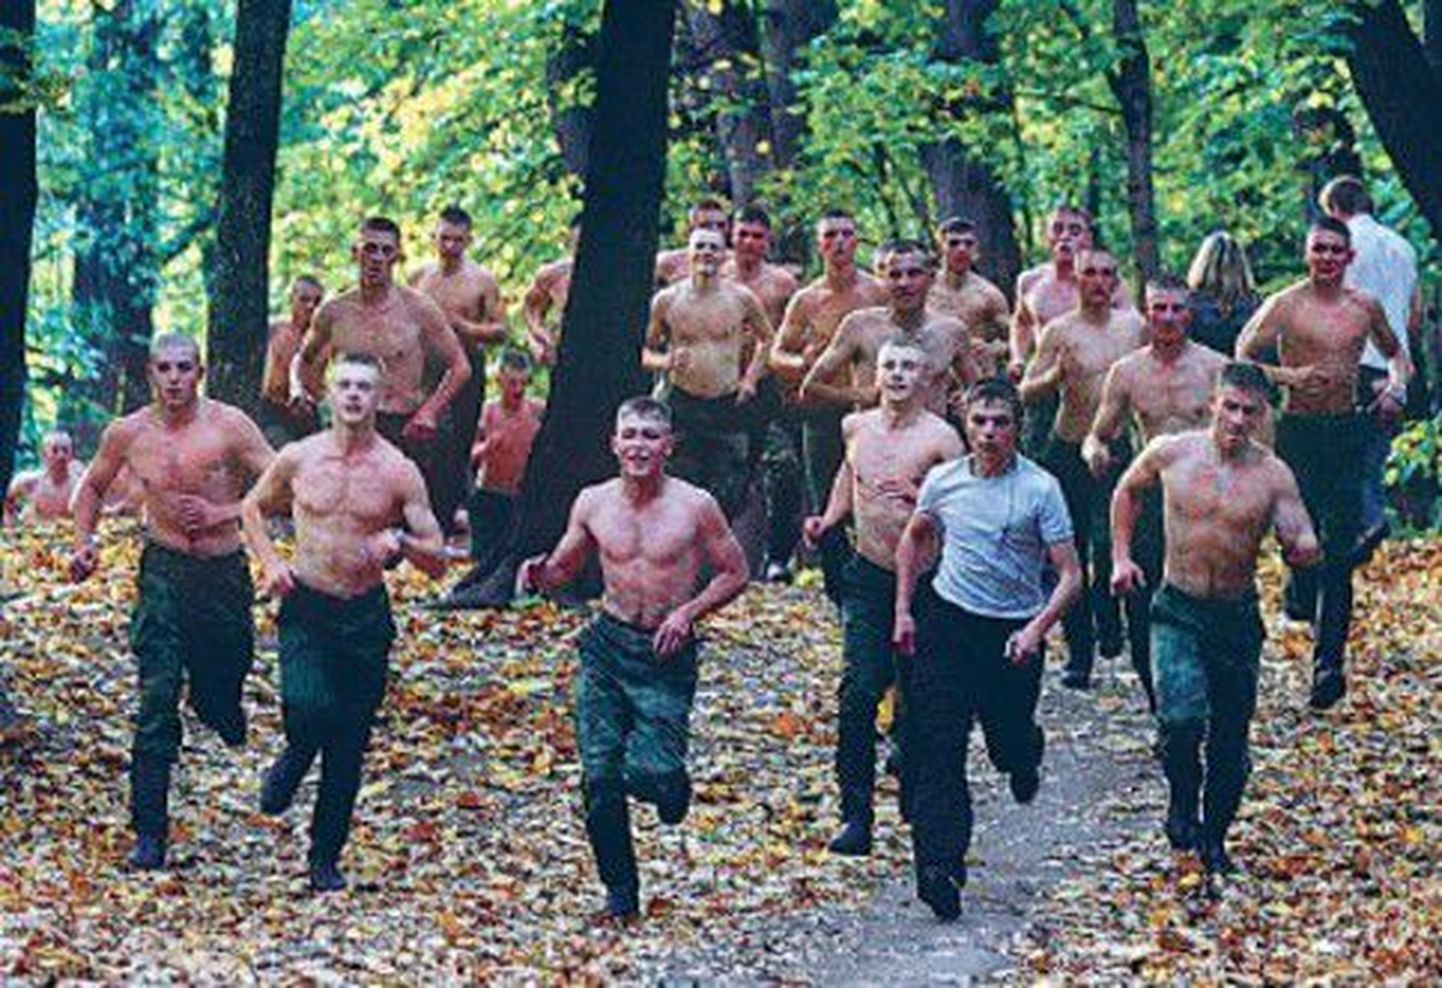 Vene ajateenijad Moskva pargis treeningjooksul.
.